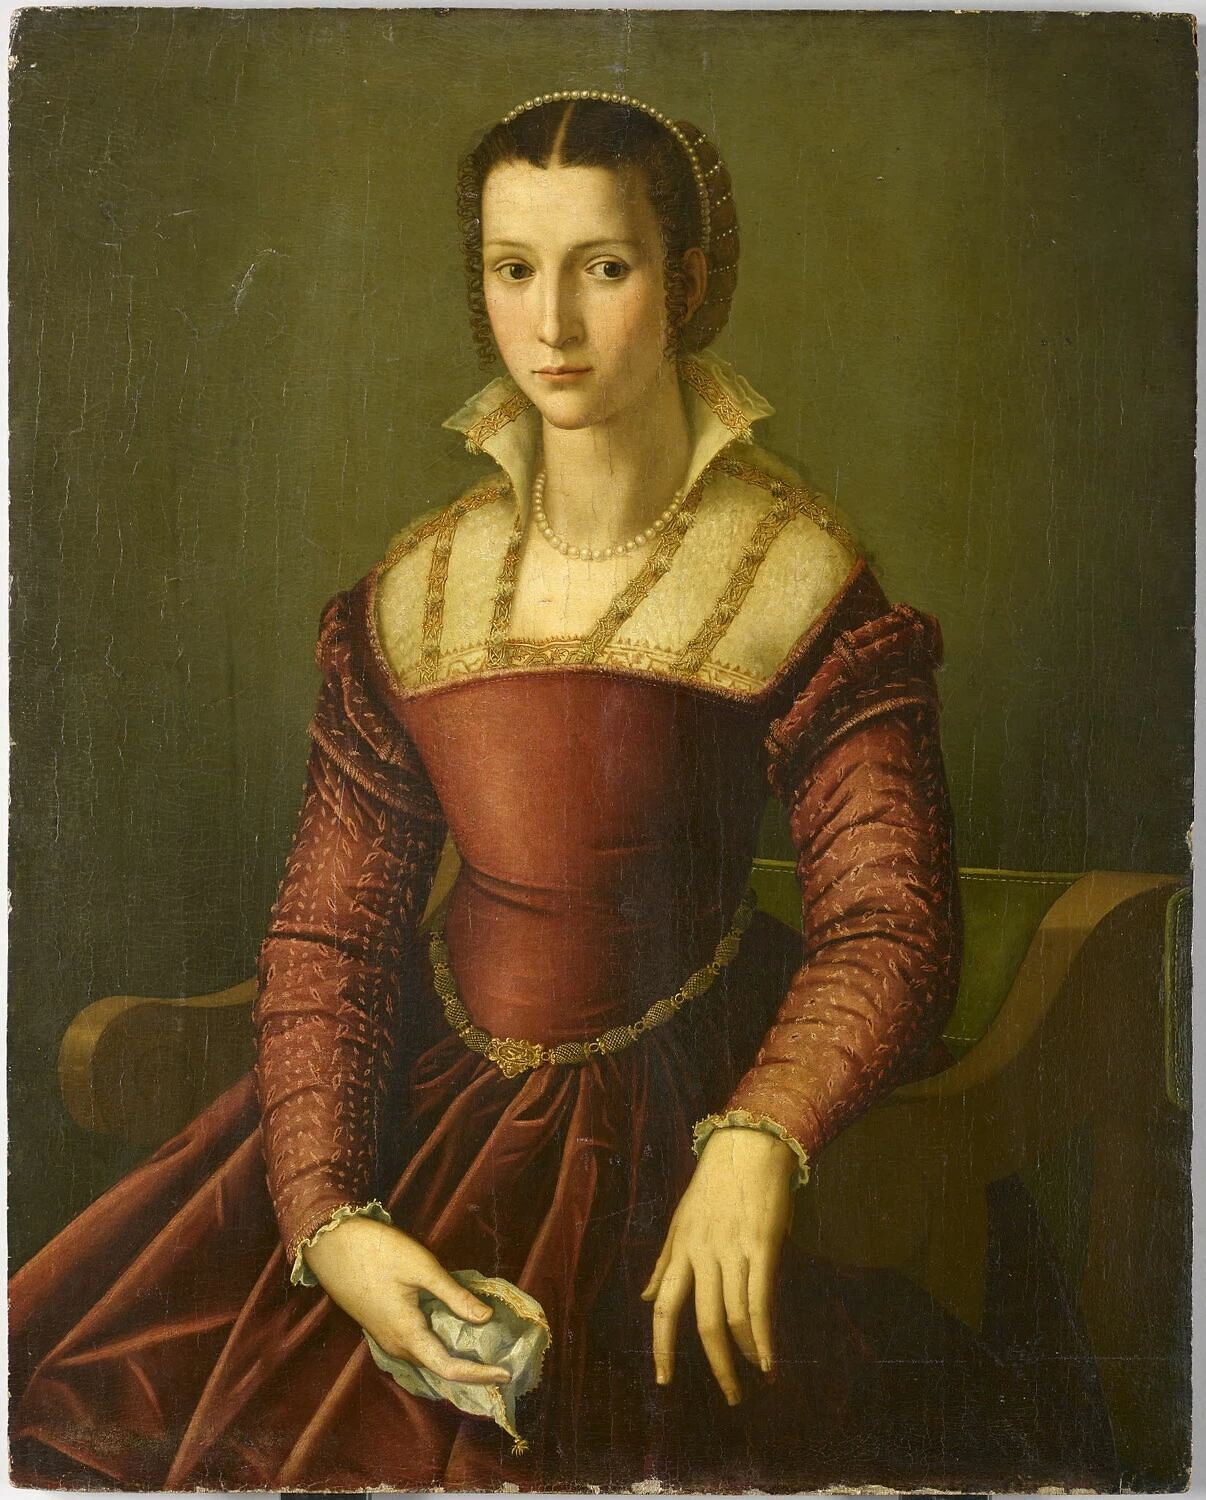  194-Agnolo Bronzino-Ritratto di giovane onna- Louvre, Parigi 